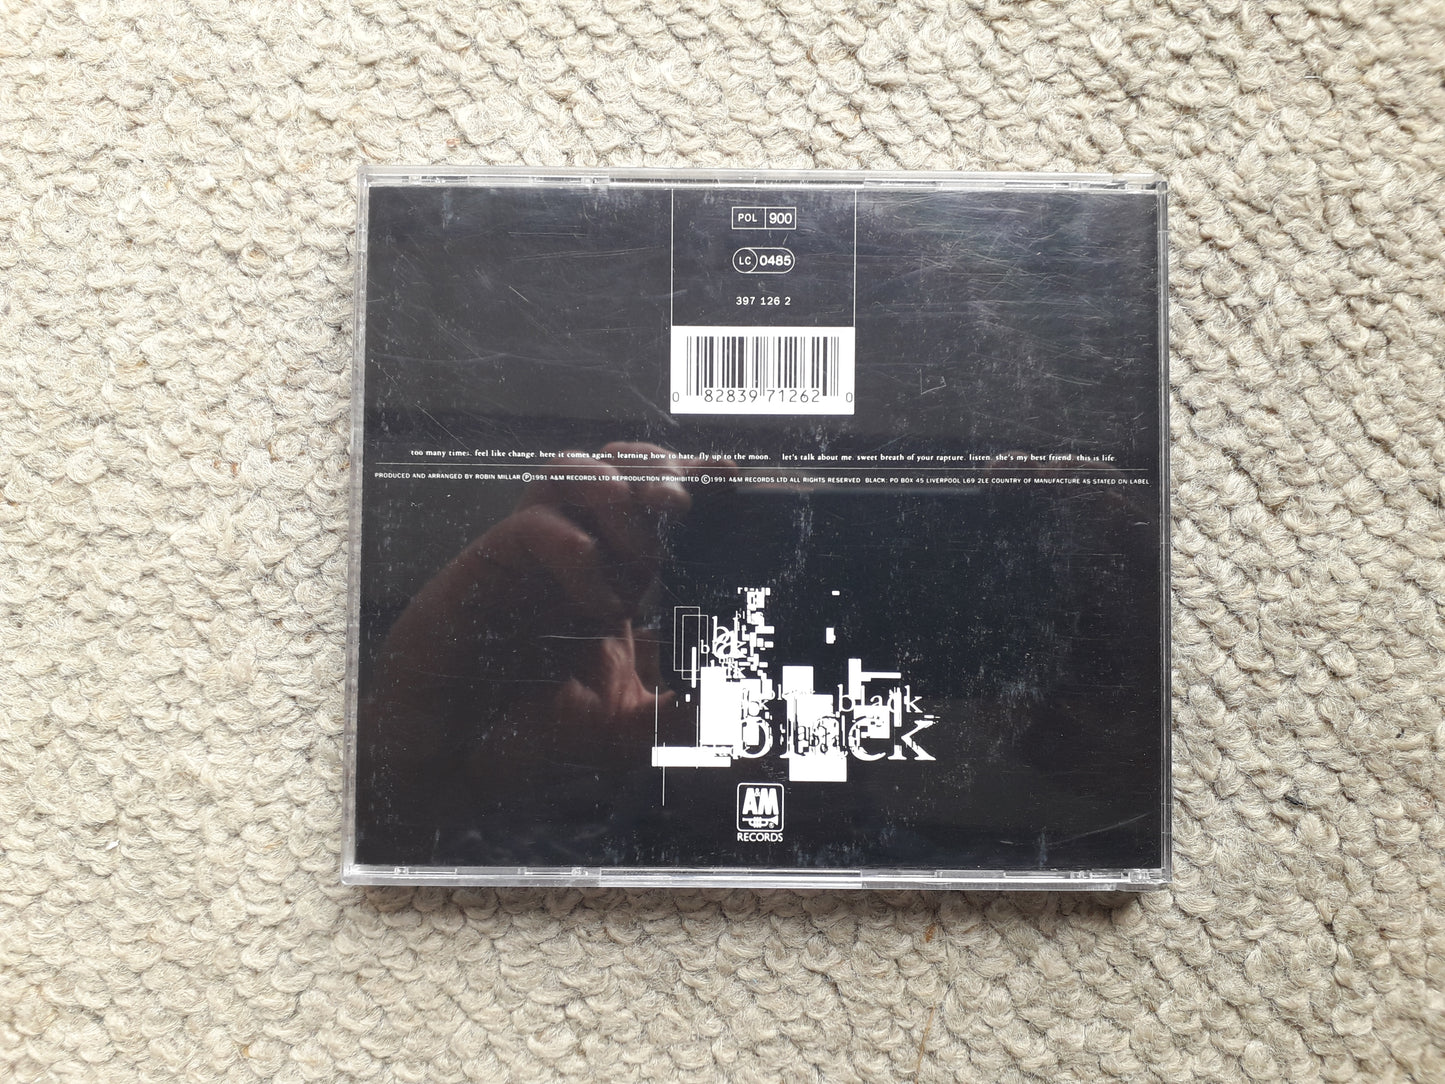 Black-Black CD (397 126 2)